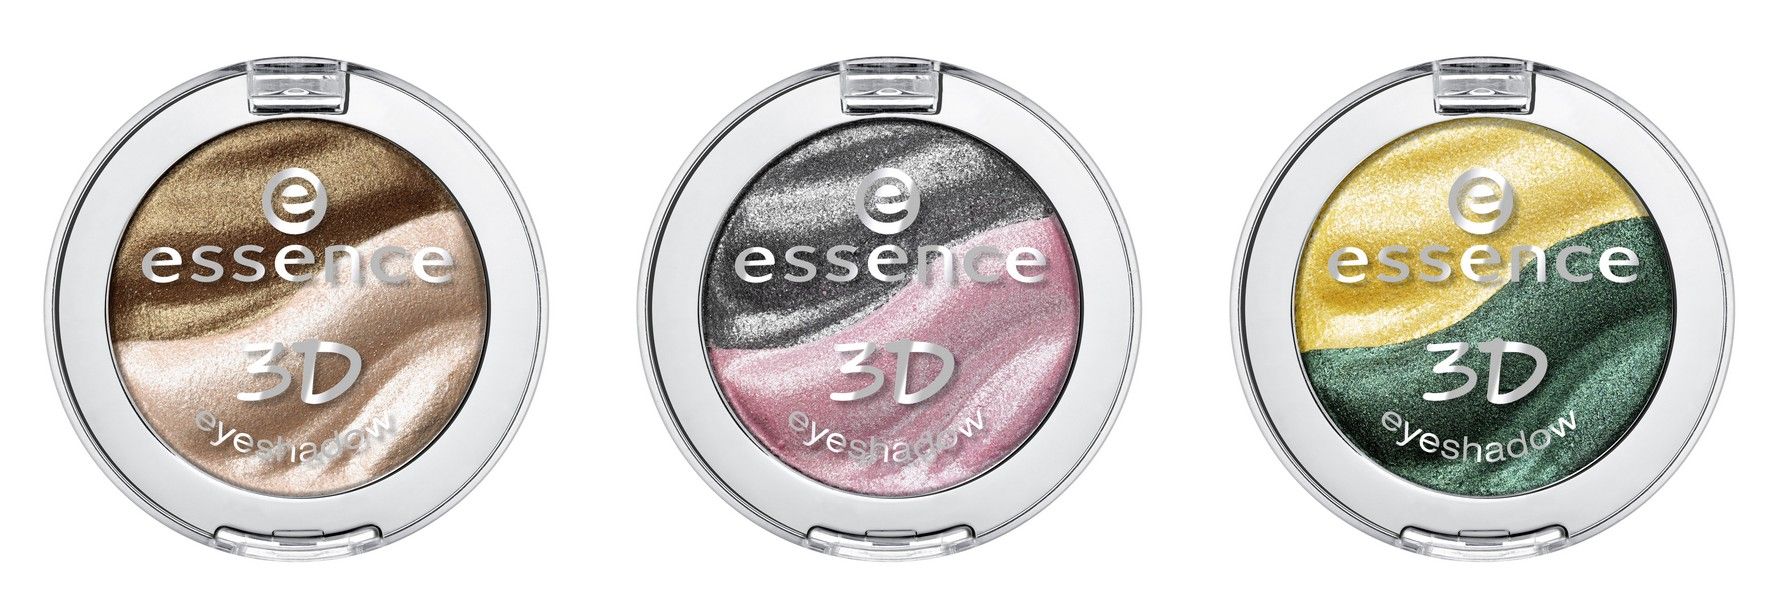 essence 3D eyeshadow